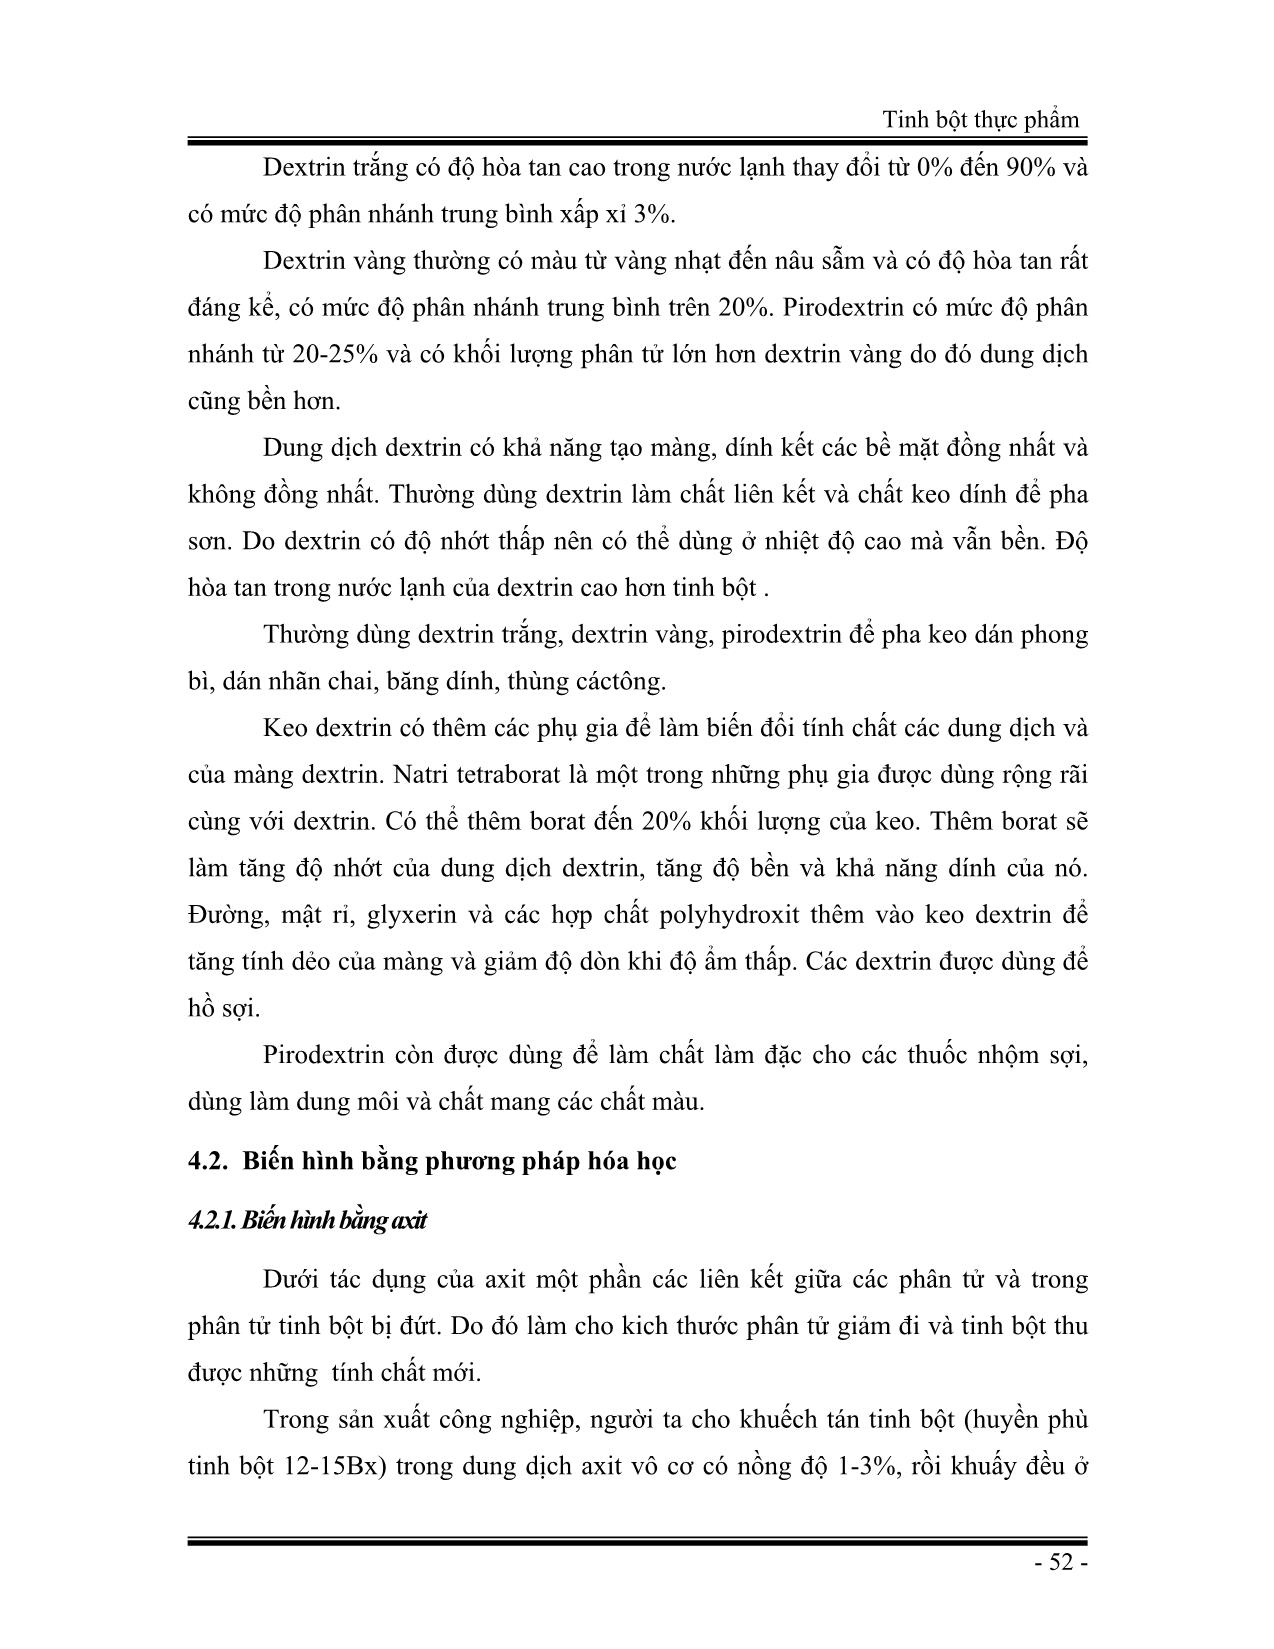 Giáo trình Tinh bột thực phẩm (Phần 2) trang 4